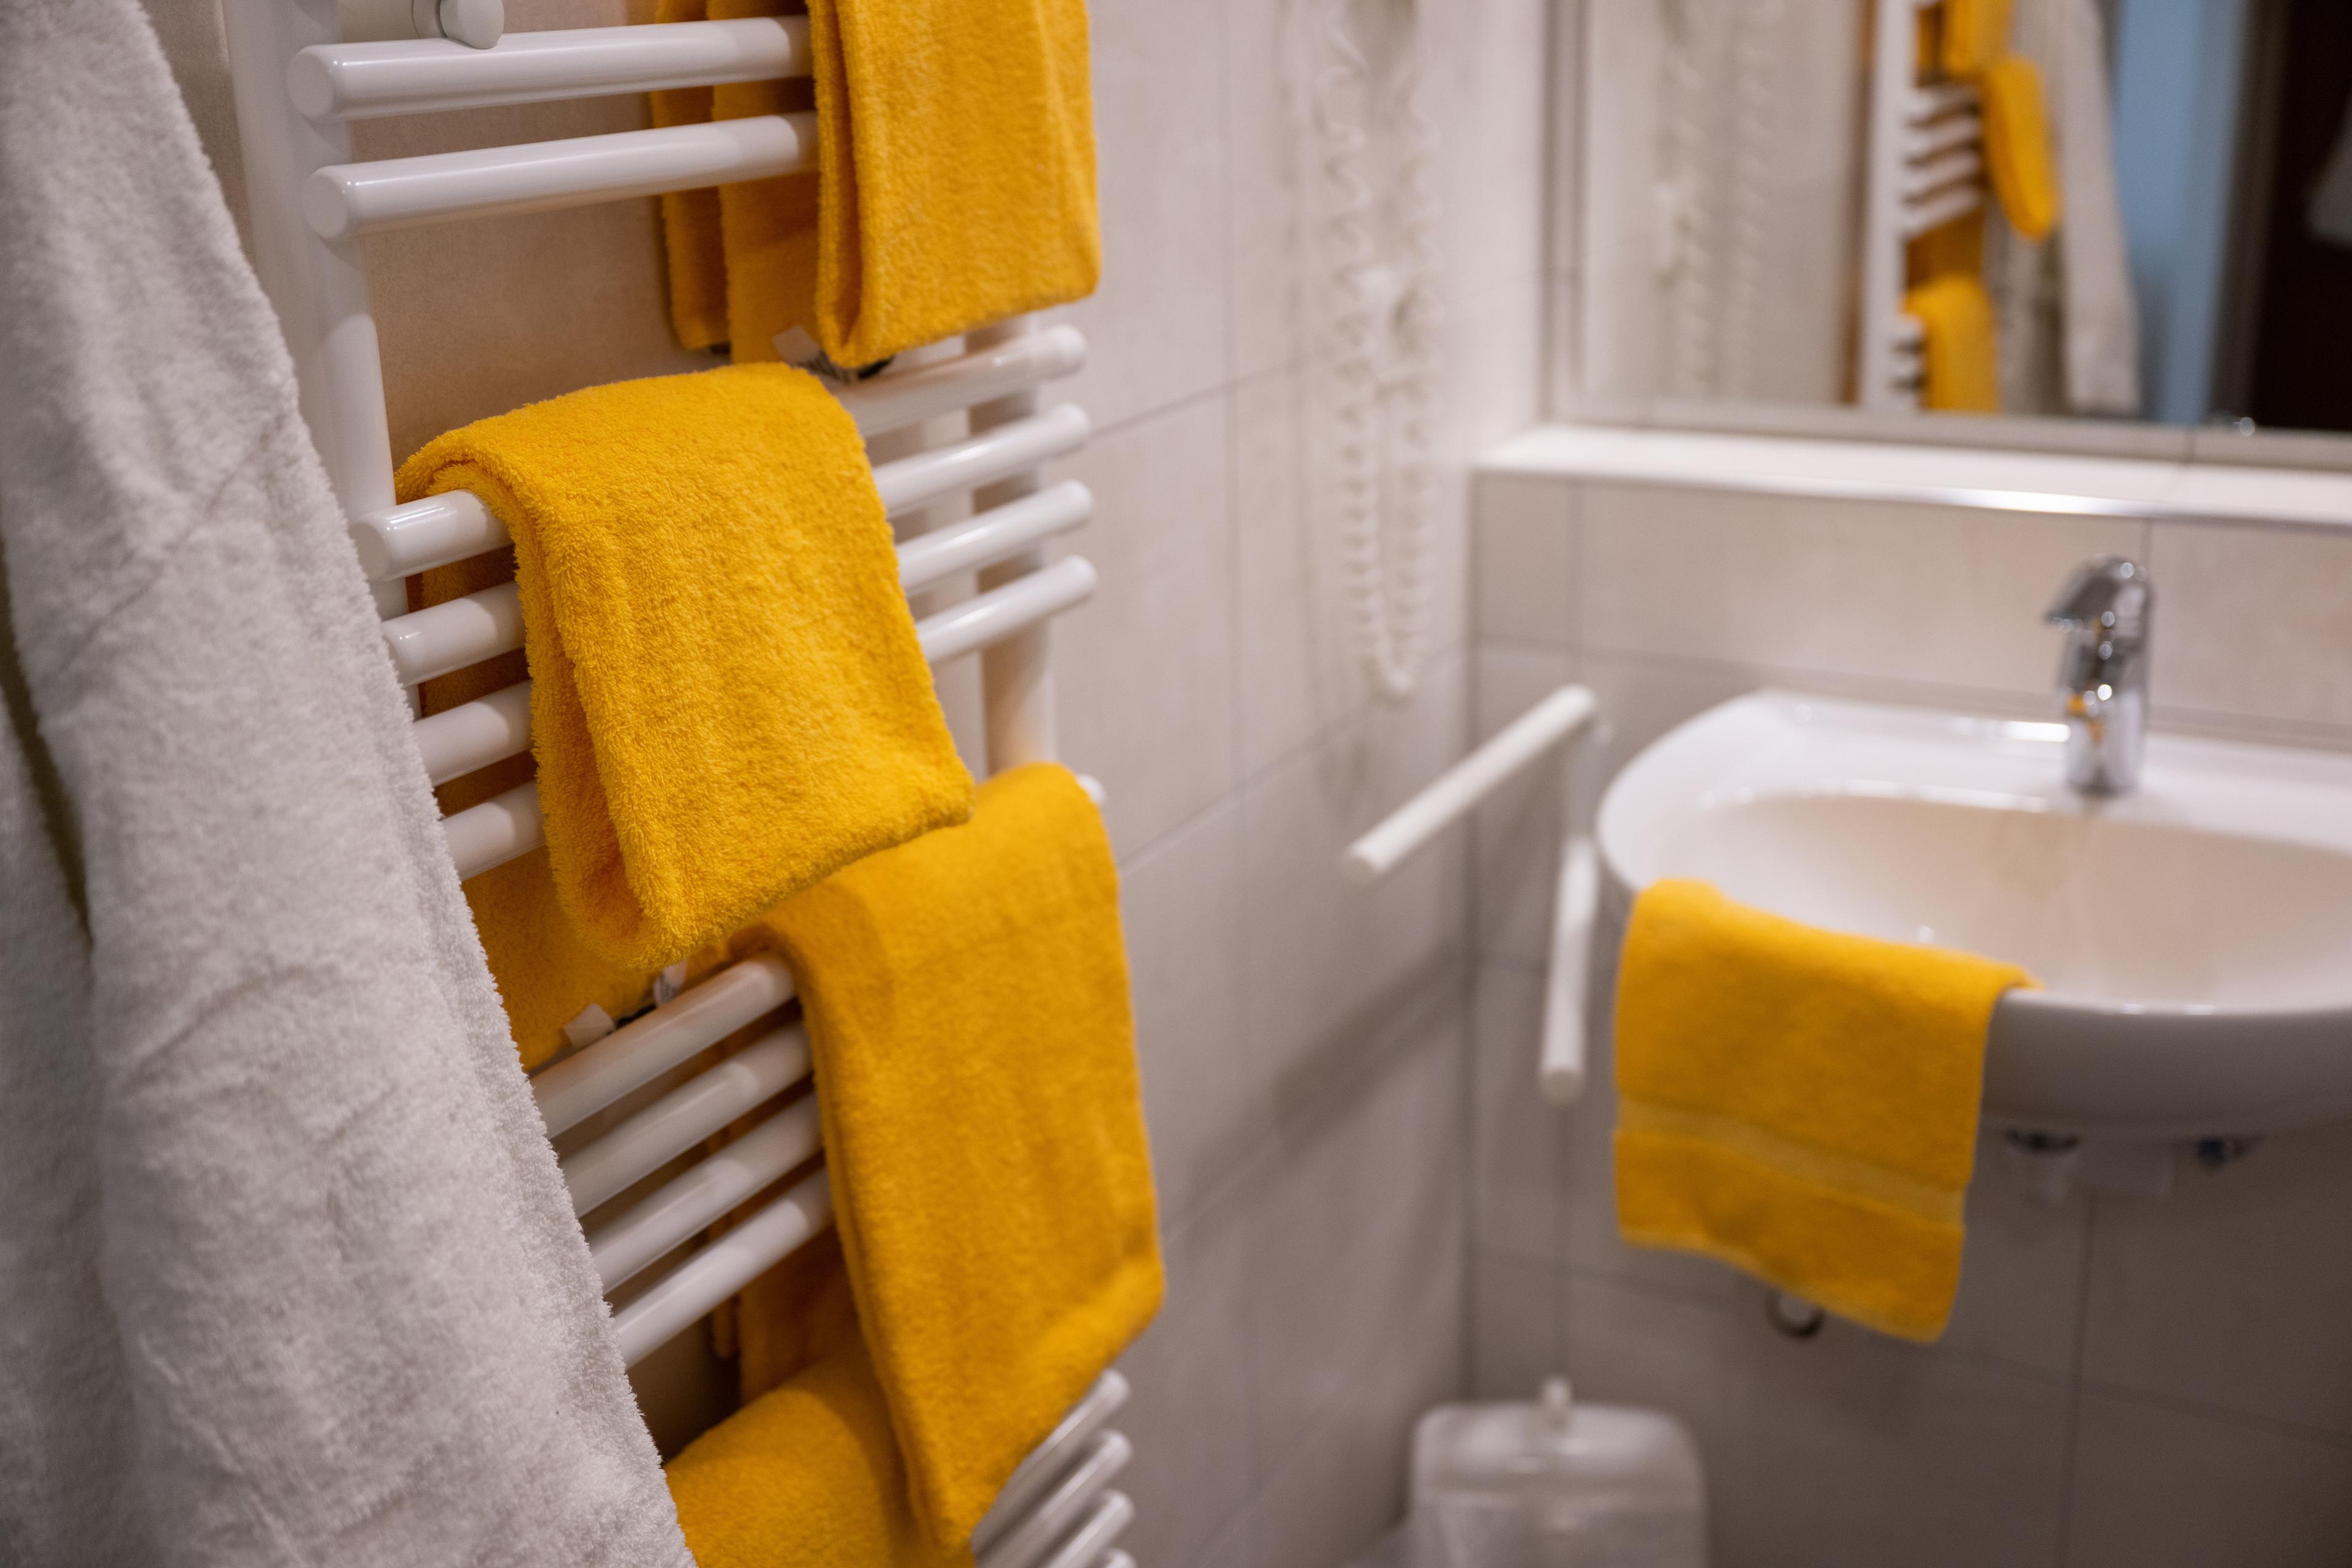 Blick ins Badezimmer: an einem weißen Heizkörper hängen drei gelbe Handtücher. Rechts ist das Waschbecken zu sehen, darüber hängt ein Spiegel. 